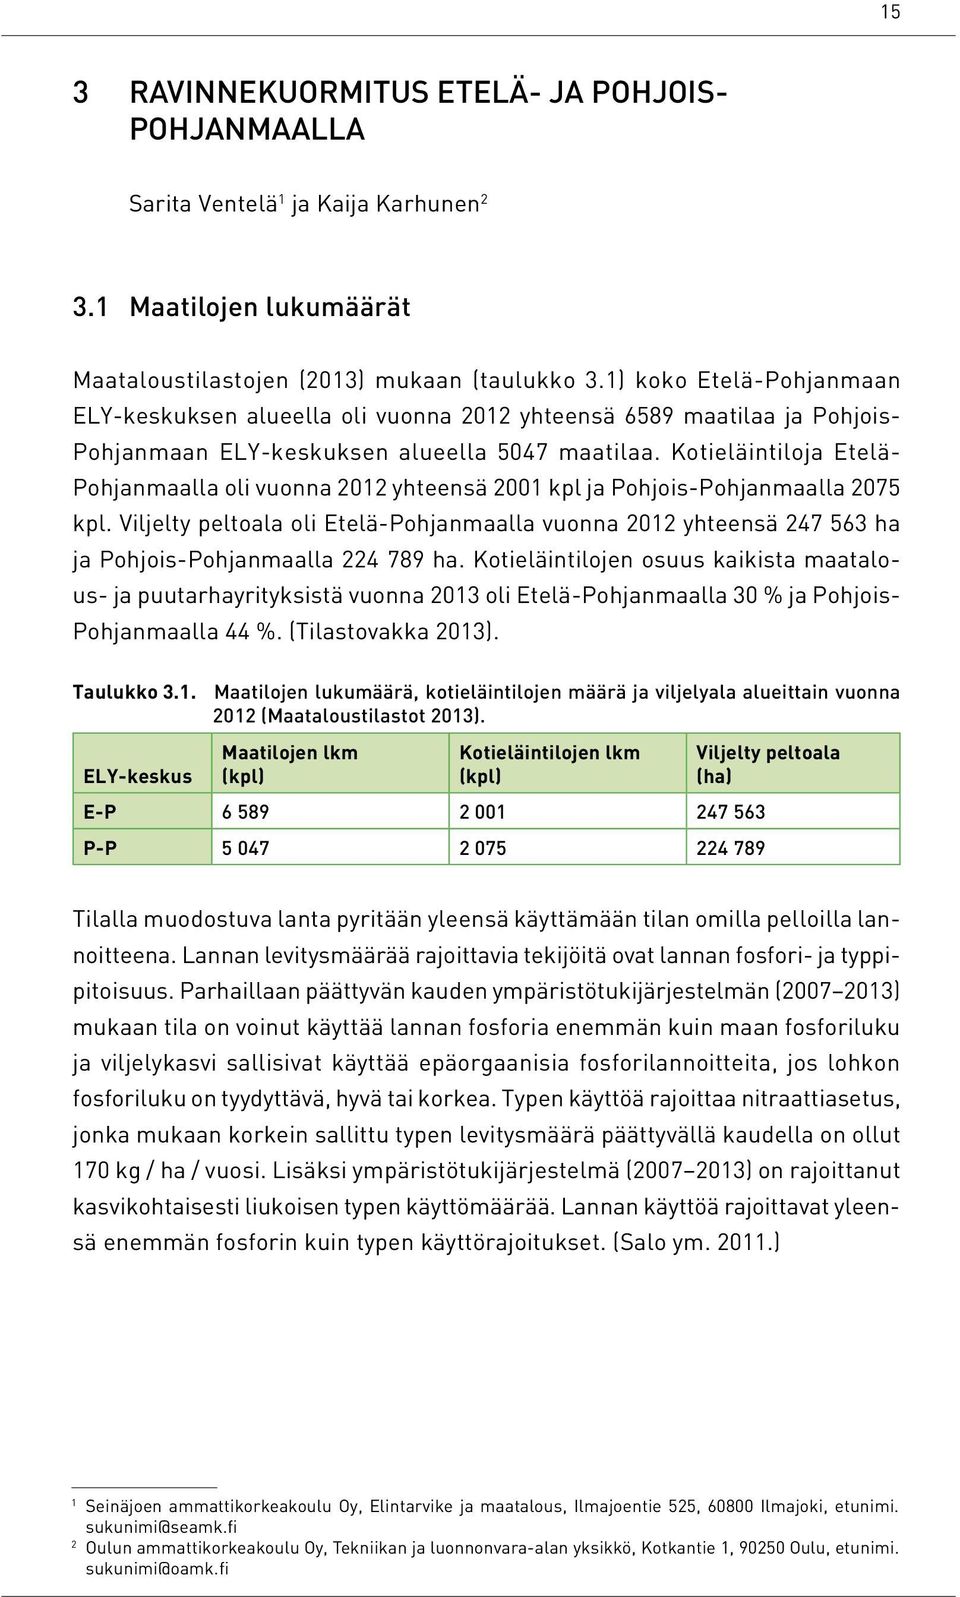 Kotieläintiloja Etelä- Pohjanmaalla oli vuonna 2012 yhteensä 2001 kpl ja Pohjois-Pohjanmaalla 2075 kpl.